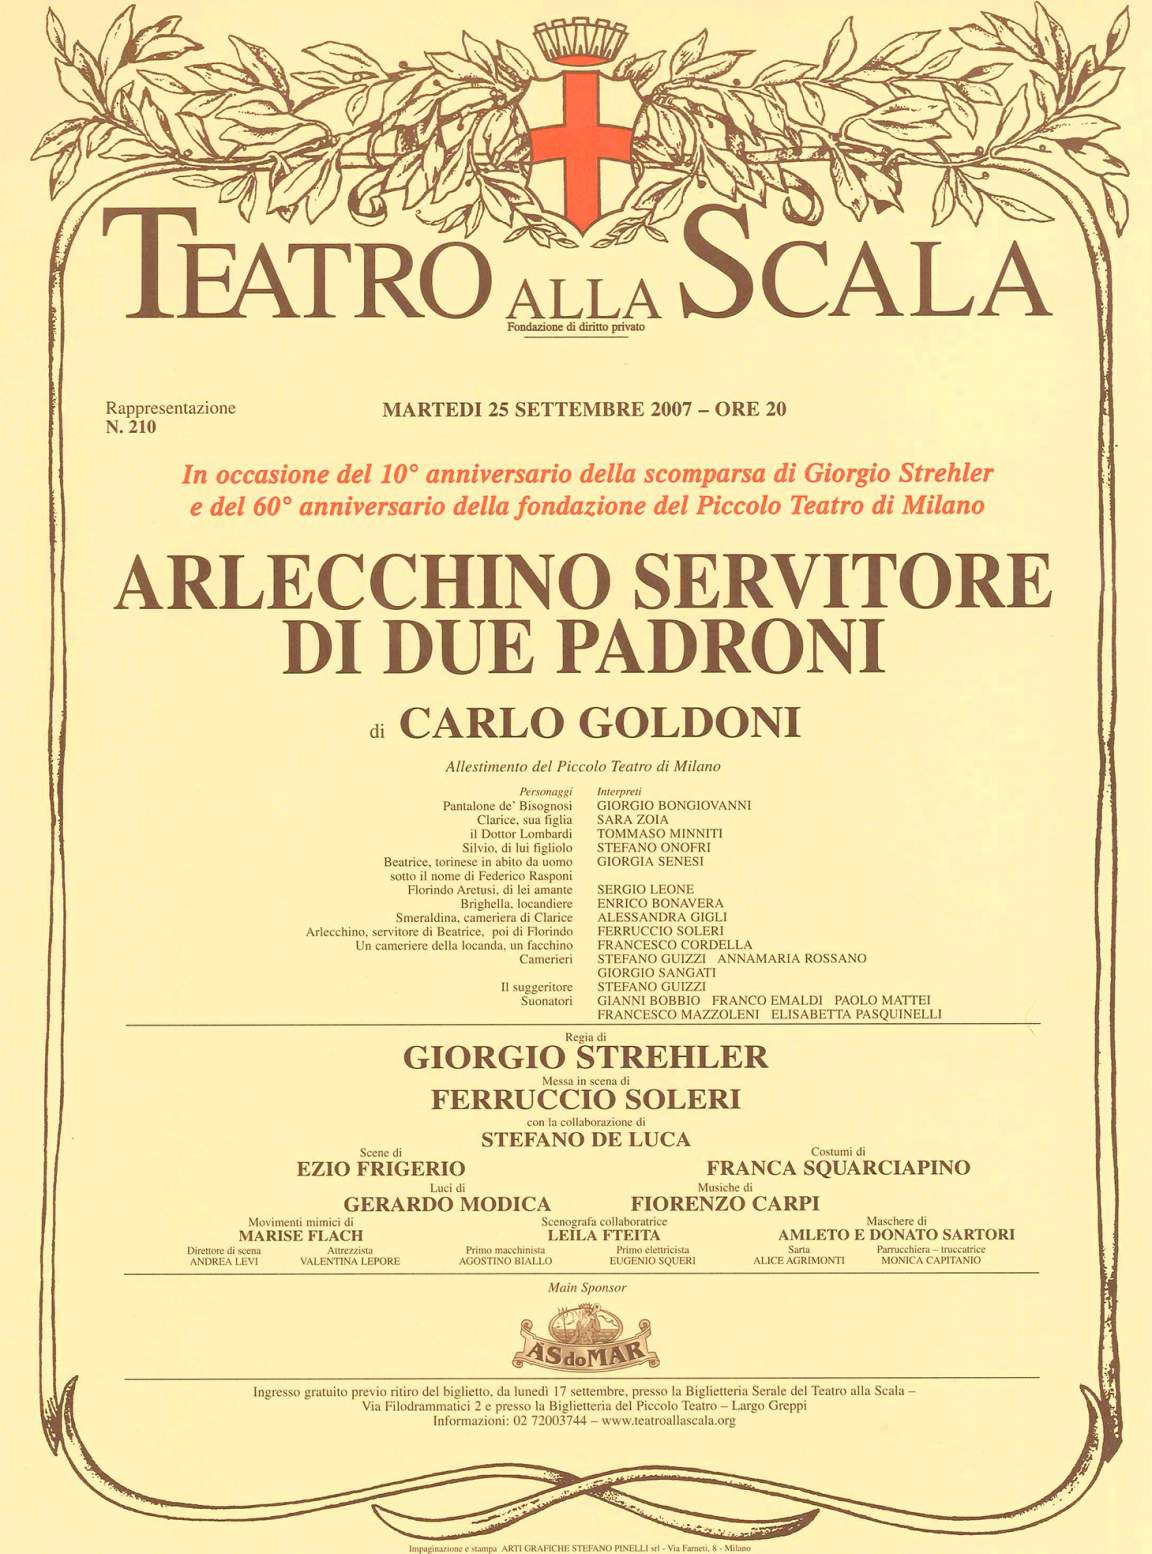 25 settembre 2007, Arlecchino sul palcoscenico del teatro alla Scala 